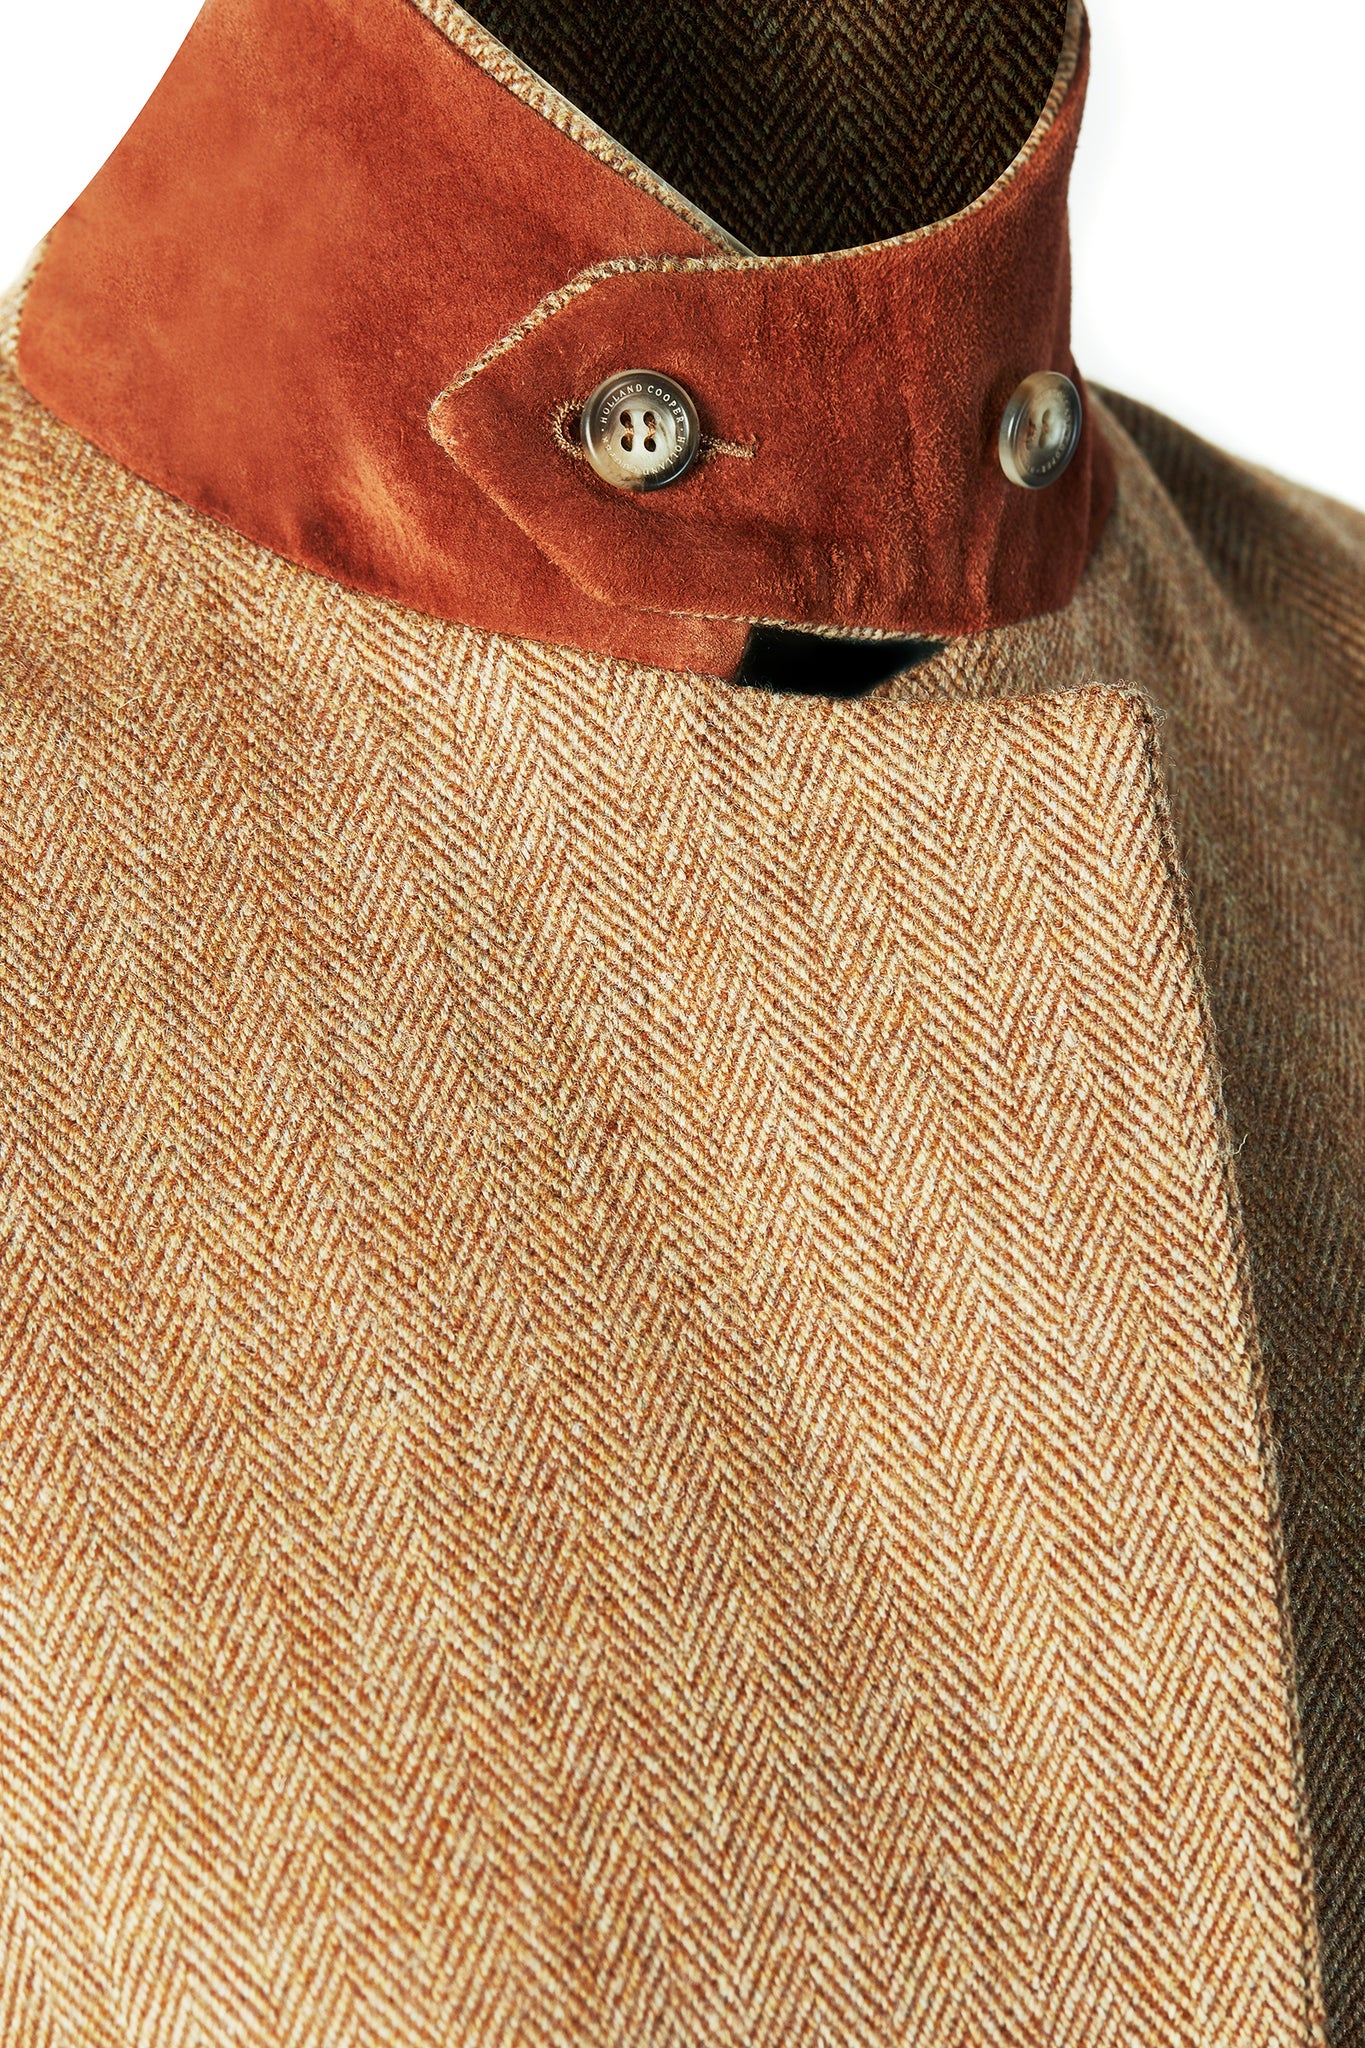 orange suede under collar on womens brown tweed single breasted full length wool coat